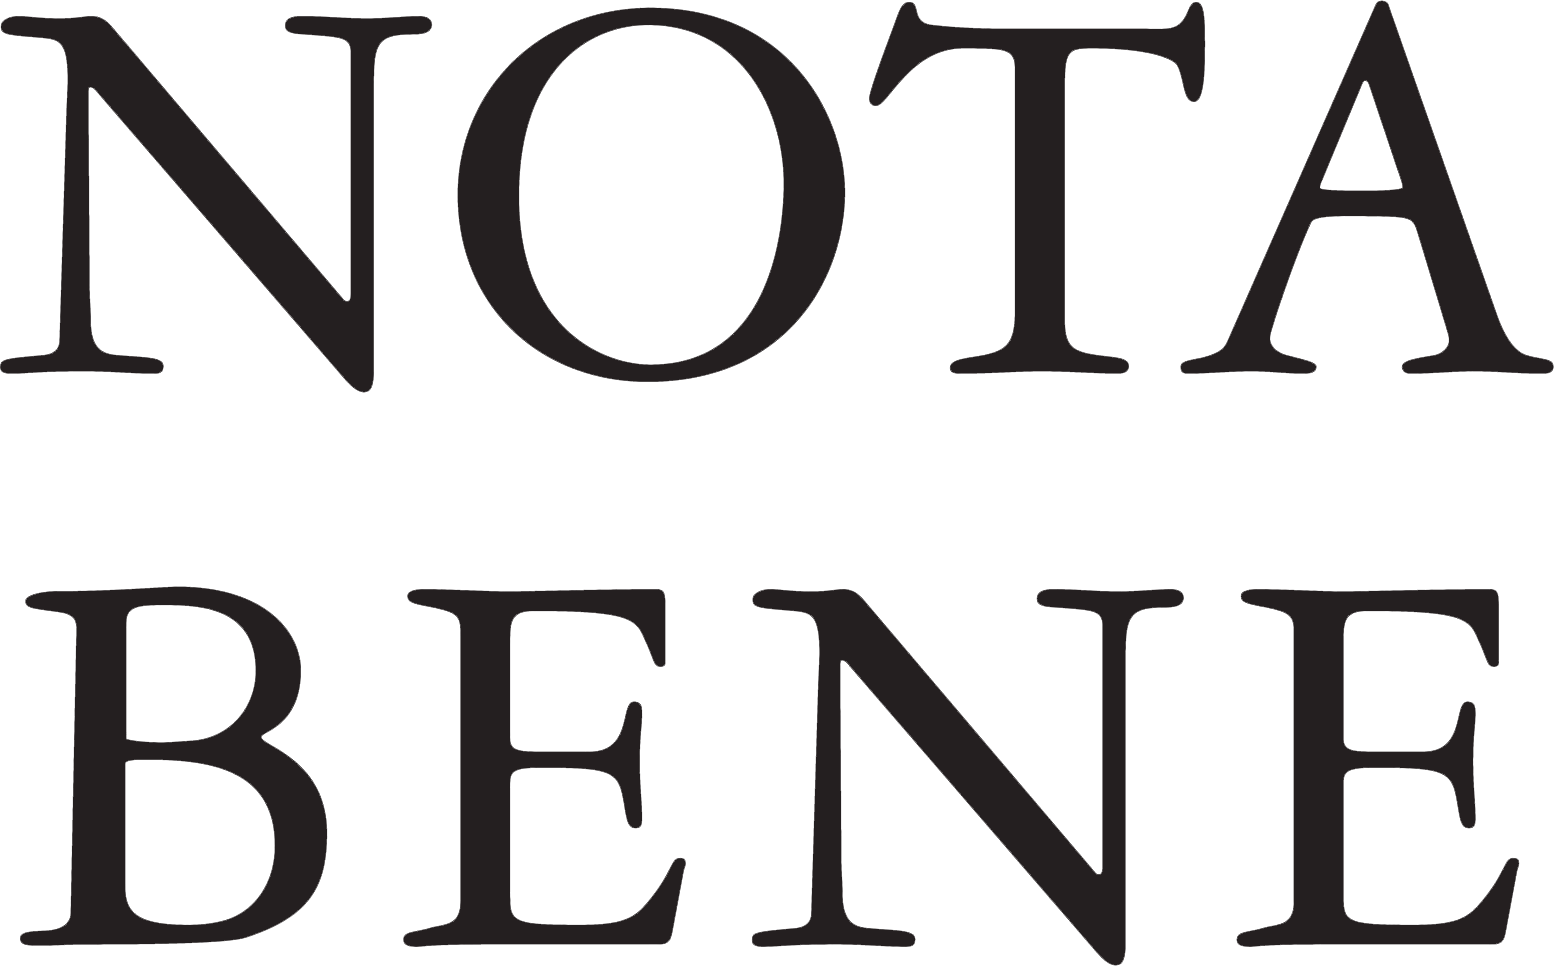 NoteBene